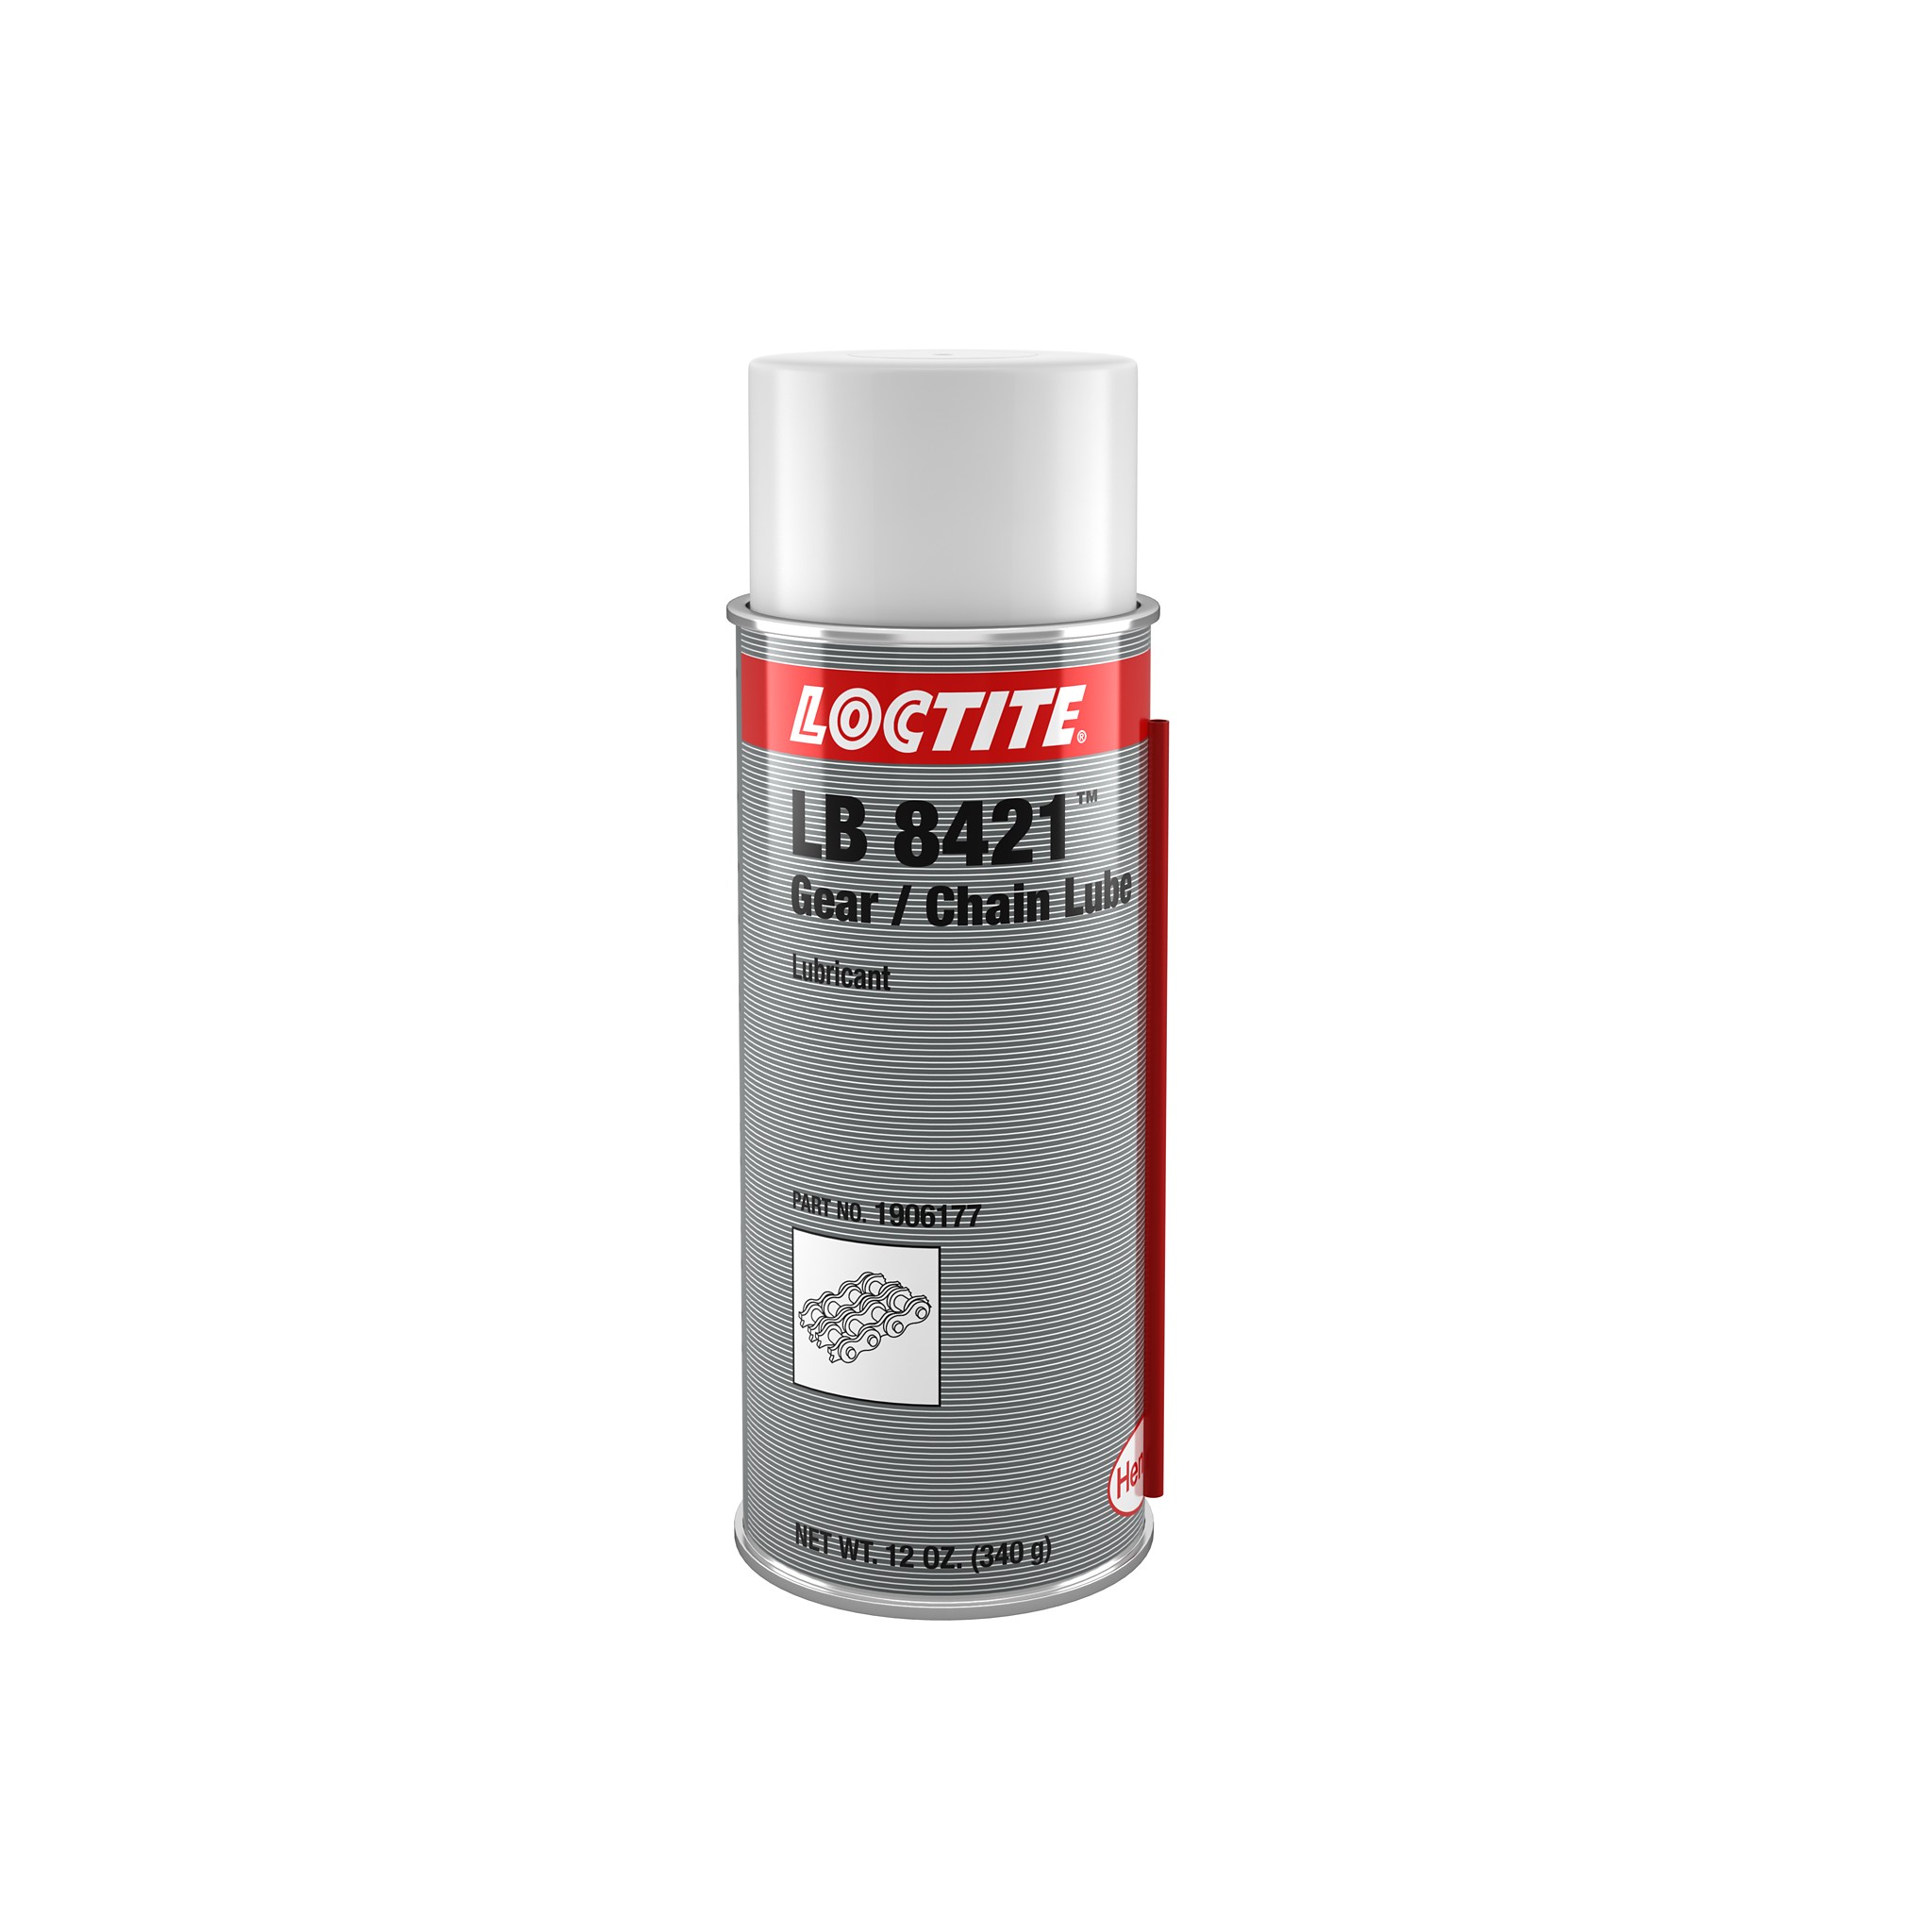 LOCTITE LB 8421 - Lubricante en spray - Henkel Adhesives